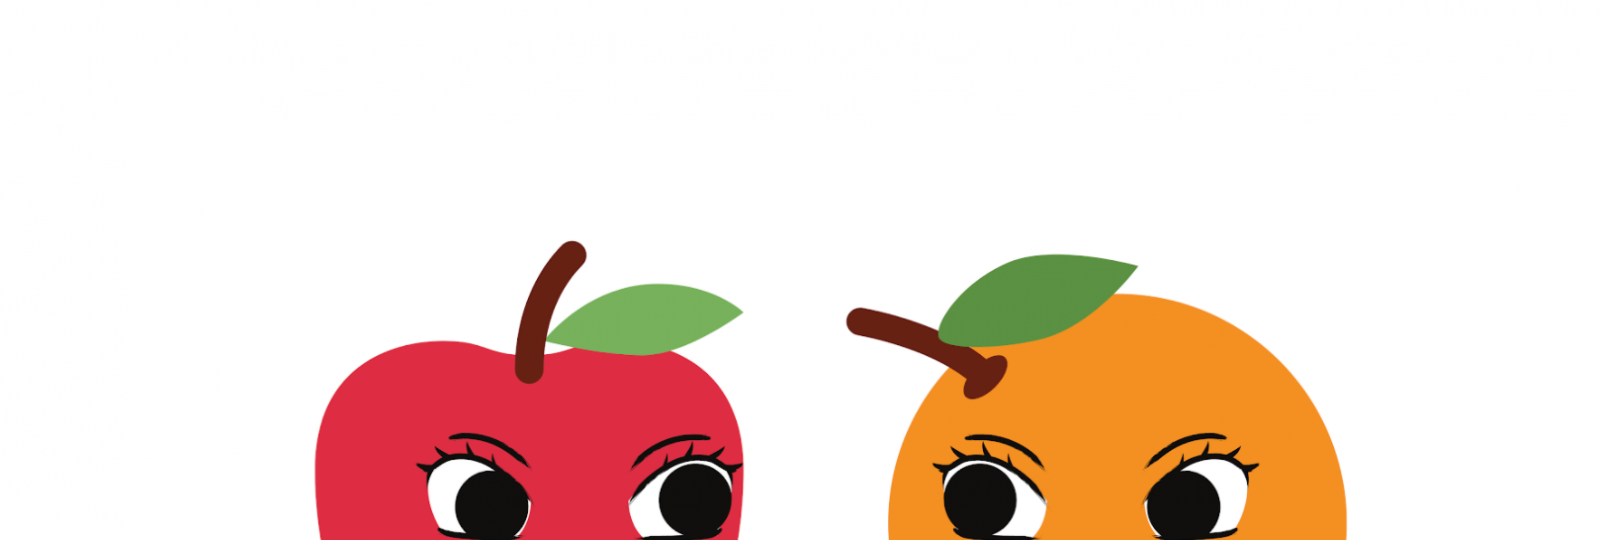 apple juice vs orange juice popularity